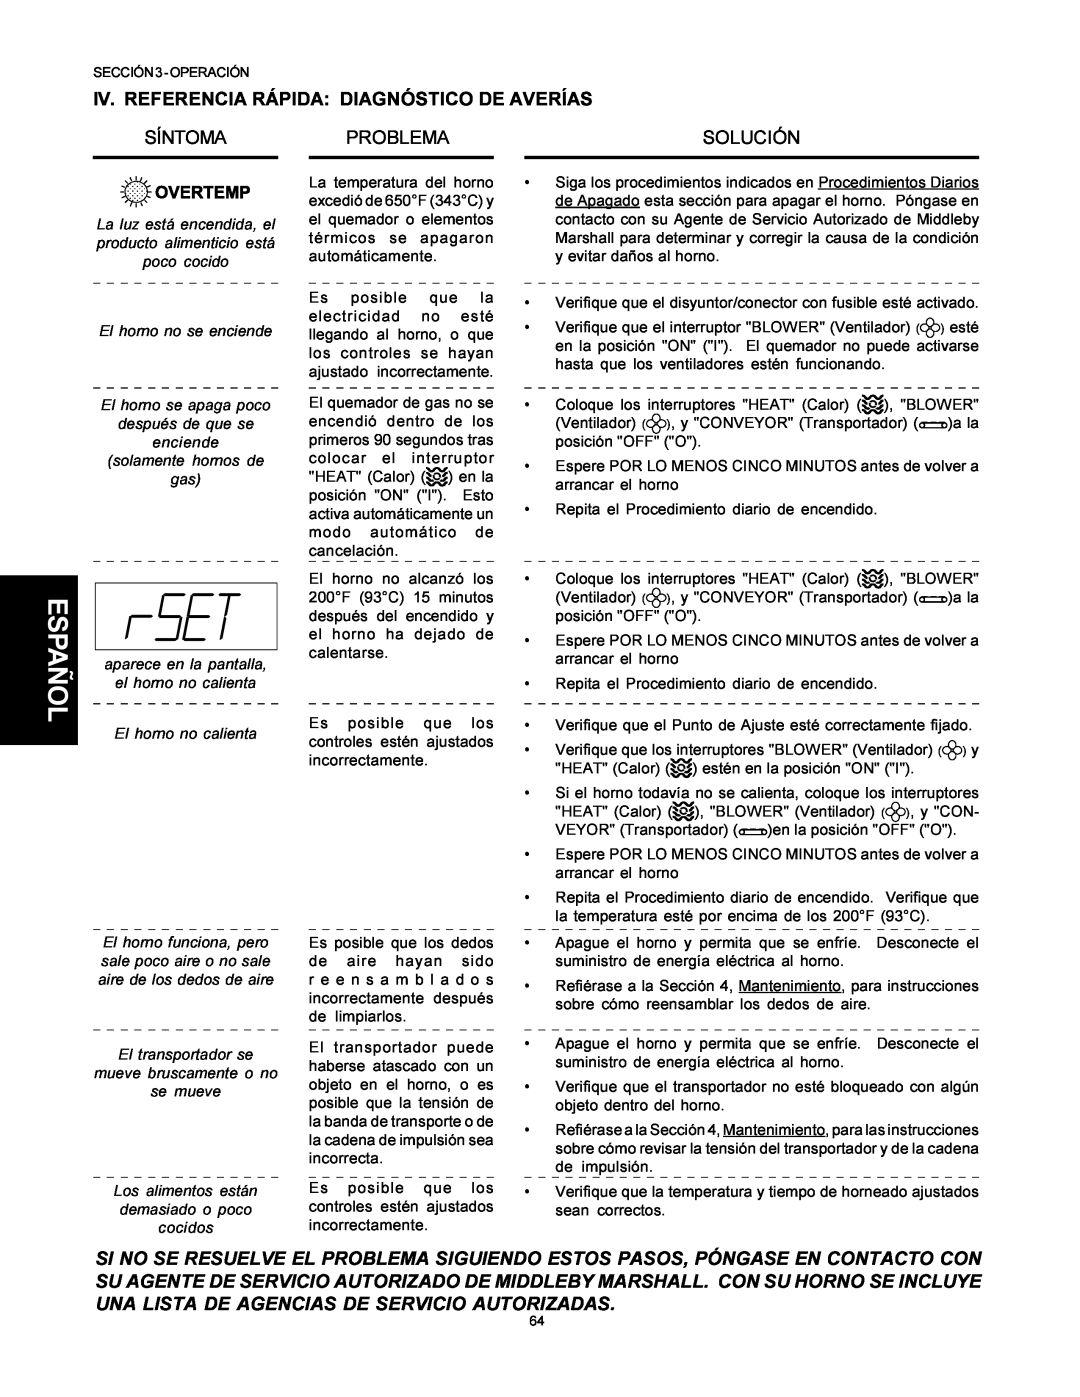 Middleby Marshall PS500 installation manual Iv. Referencia Rápida Diagnóstico De Averías, Síntoma, Problema, Solución 